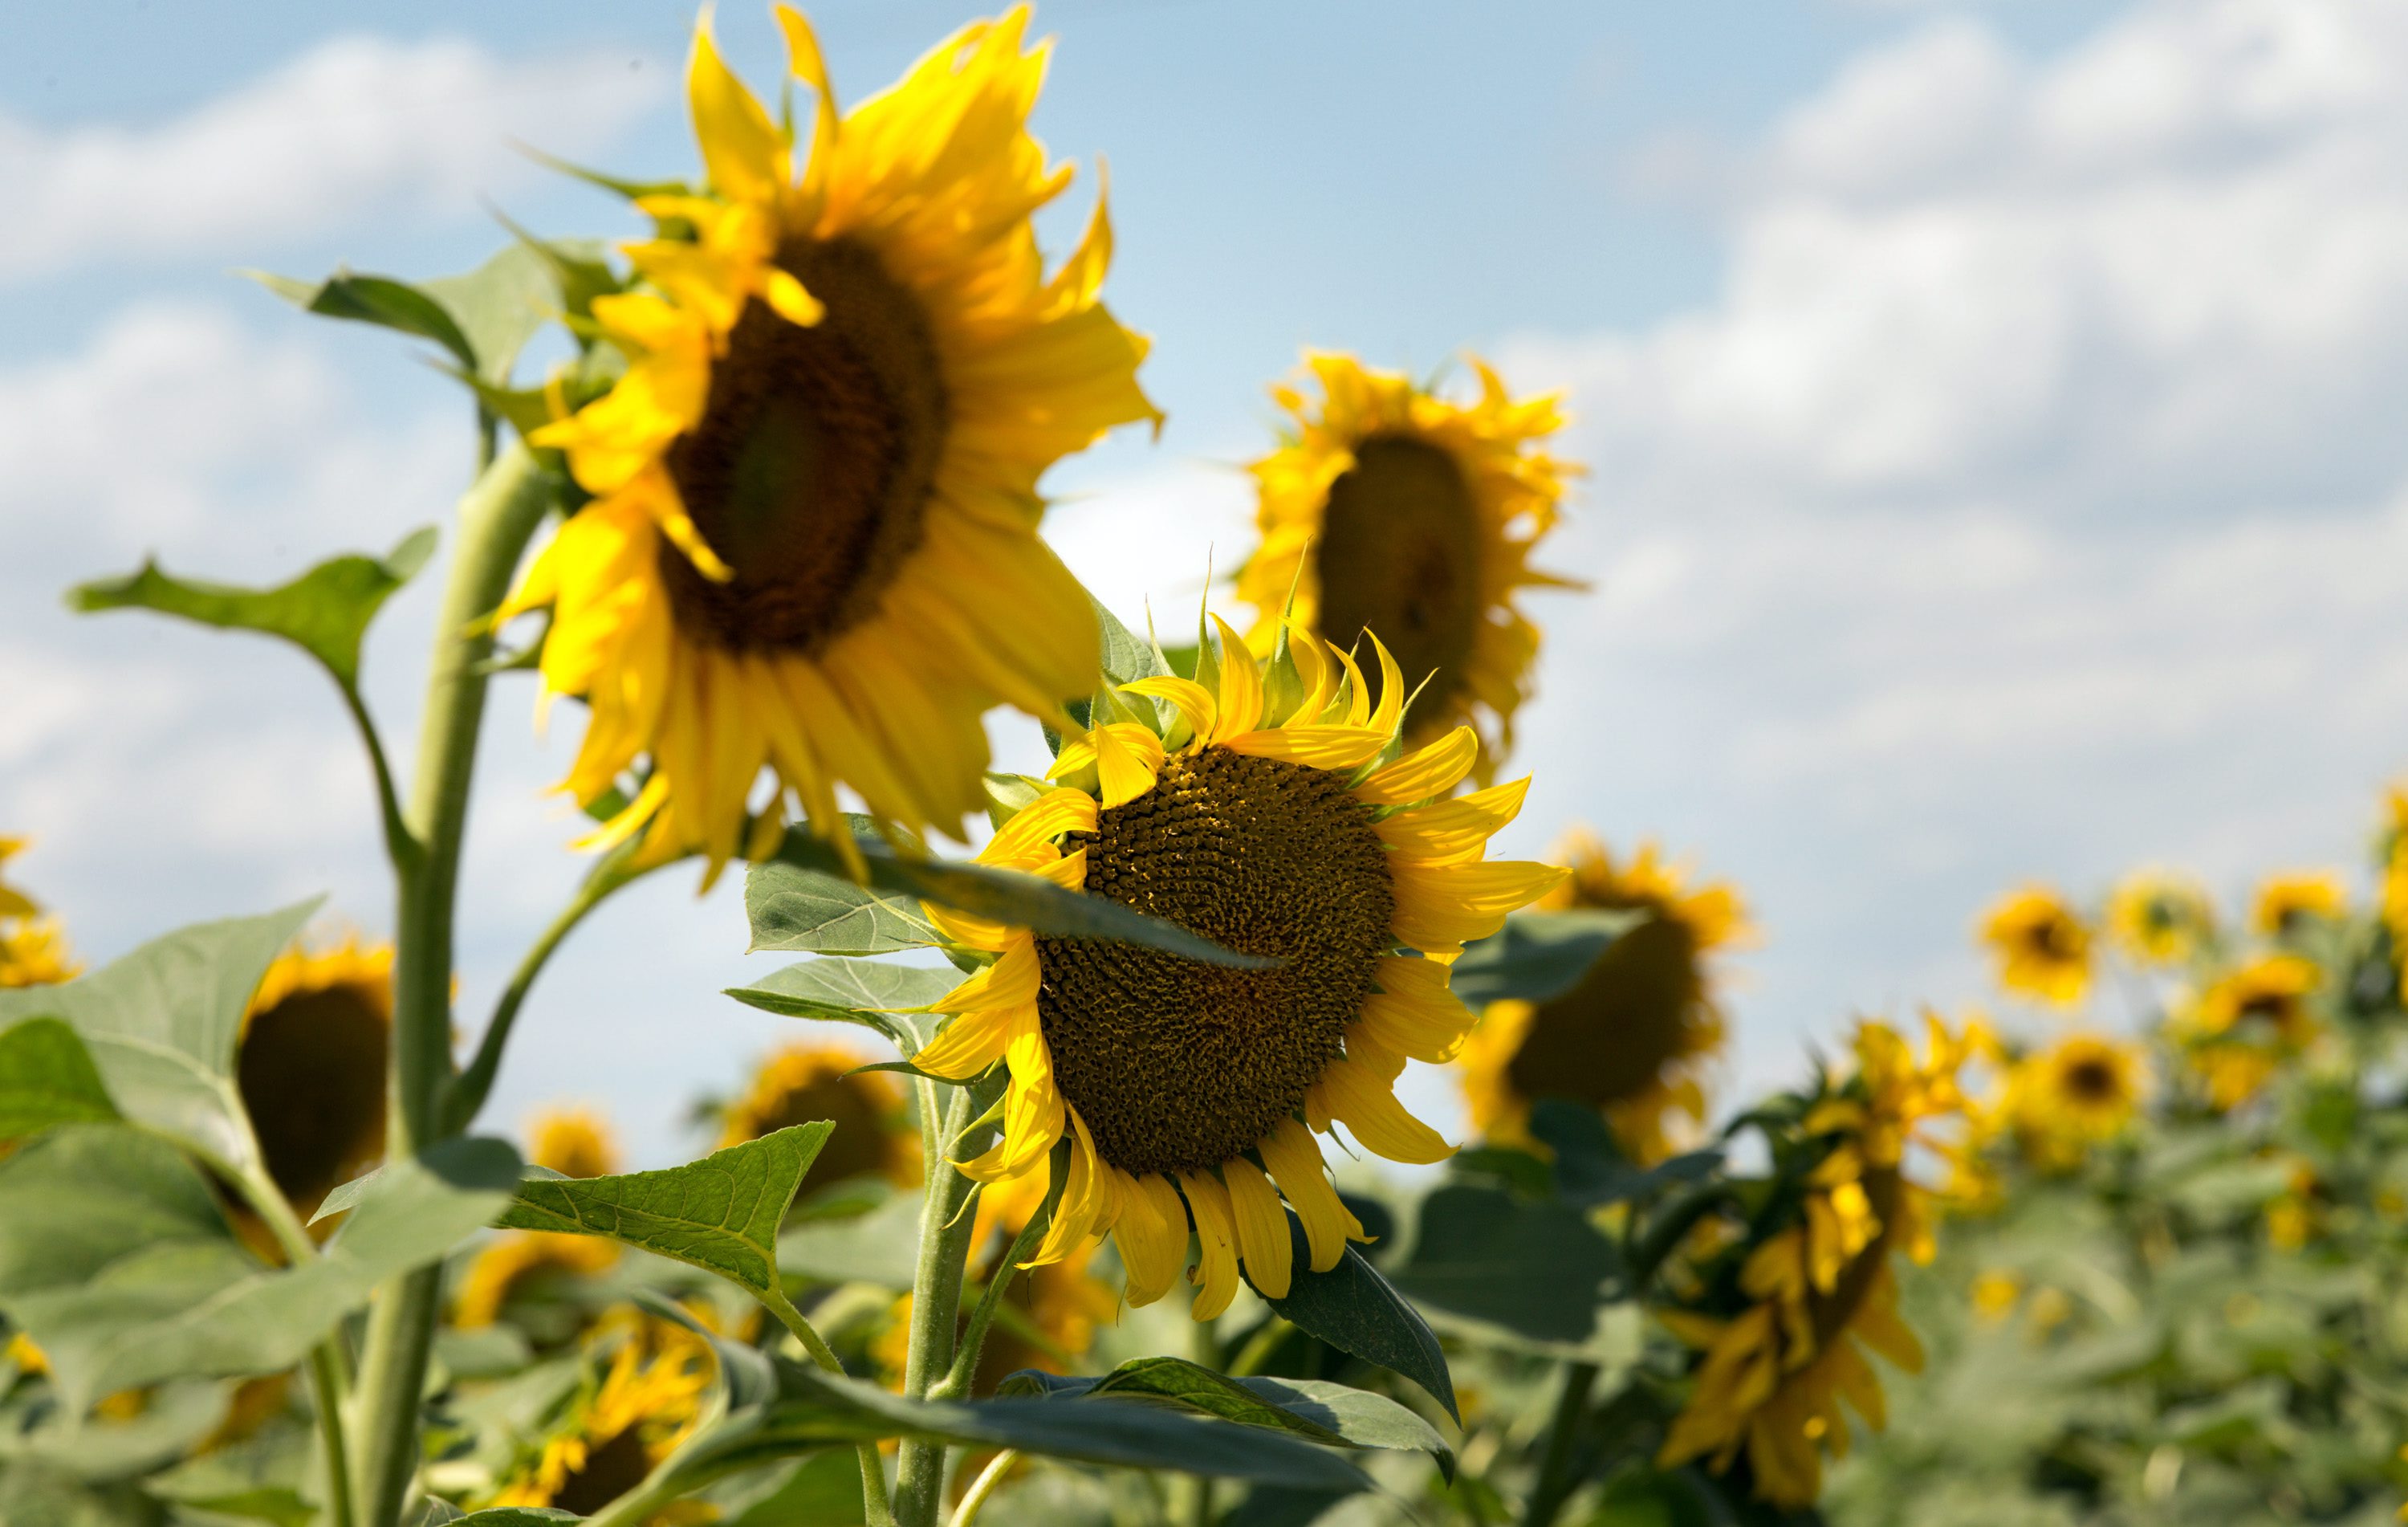 Find Peace in the Croatian Sunflower Fields | Croatia Times